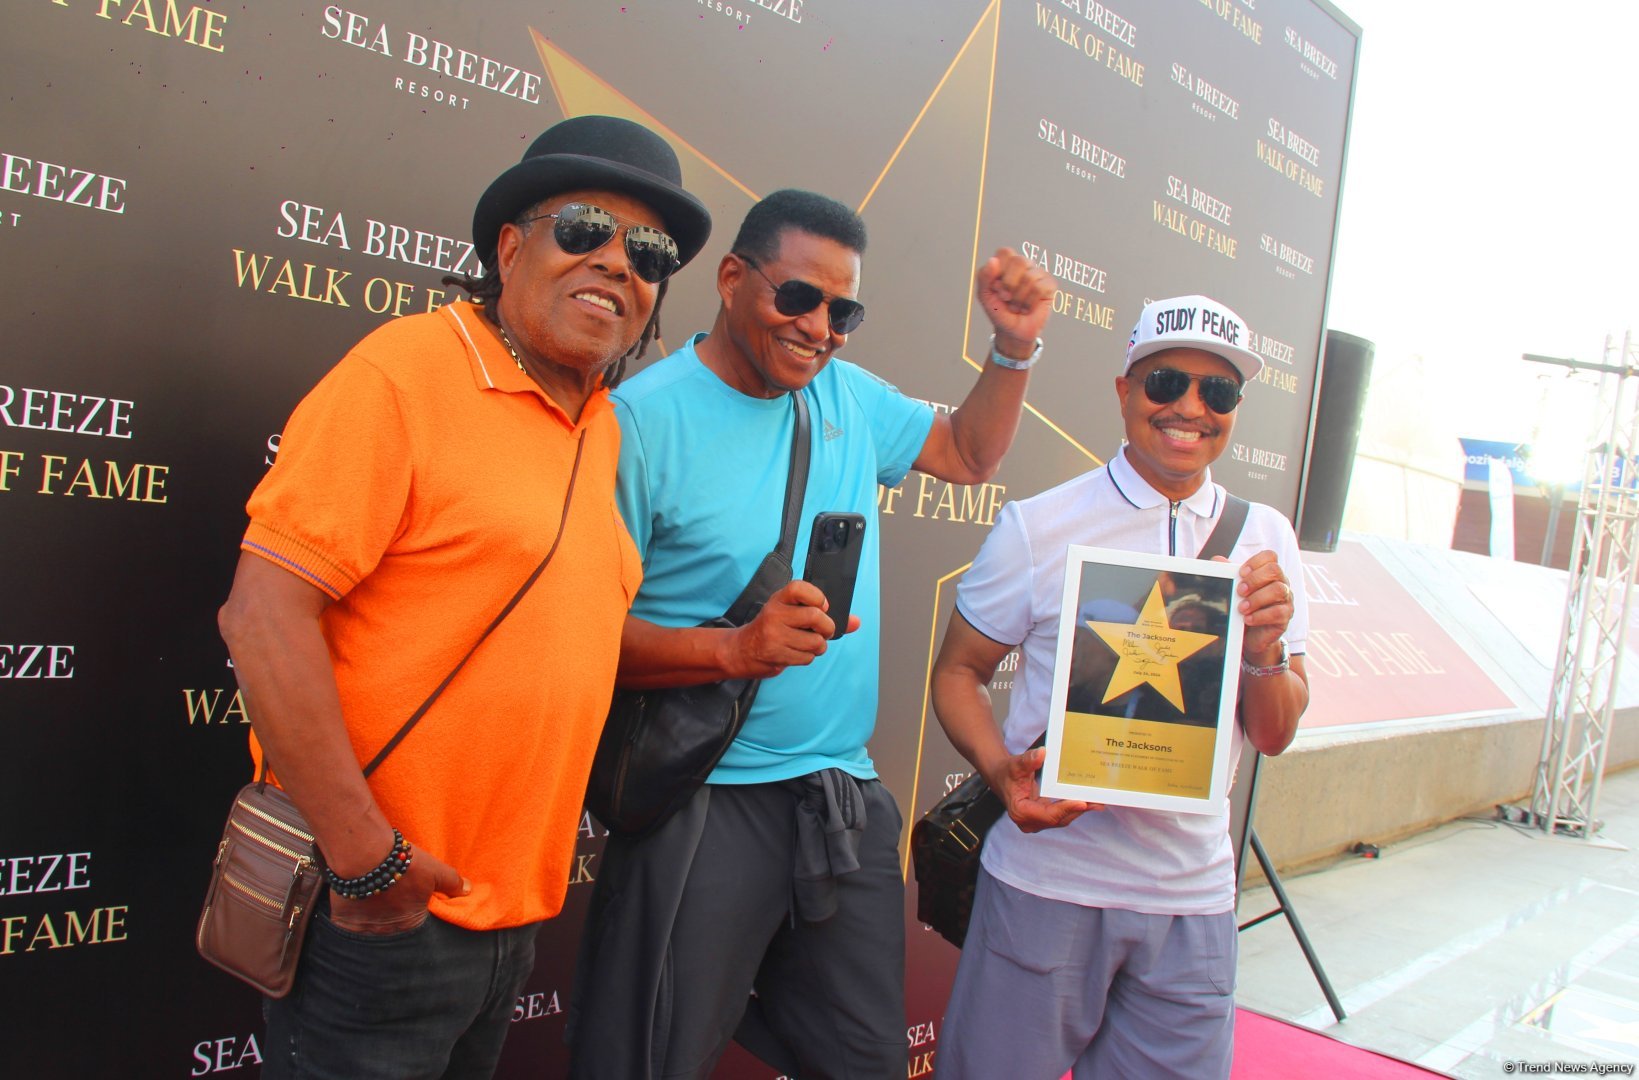 Легендарная группа The Jacksons заложила звезду в Sea Breeze Walk of Fame в Баку (ФОТО)